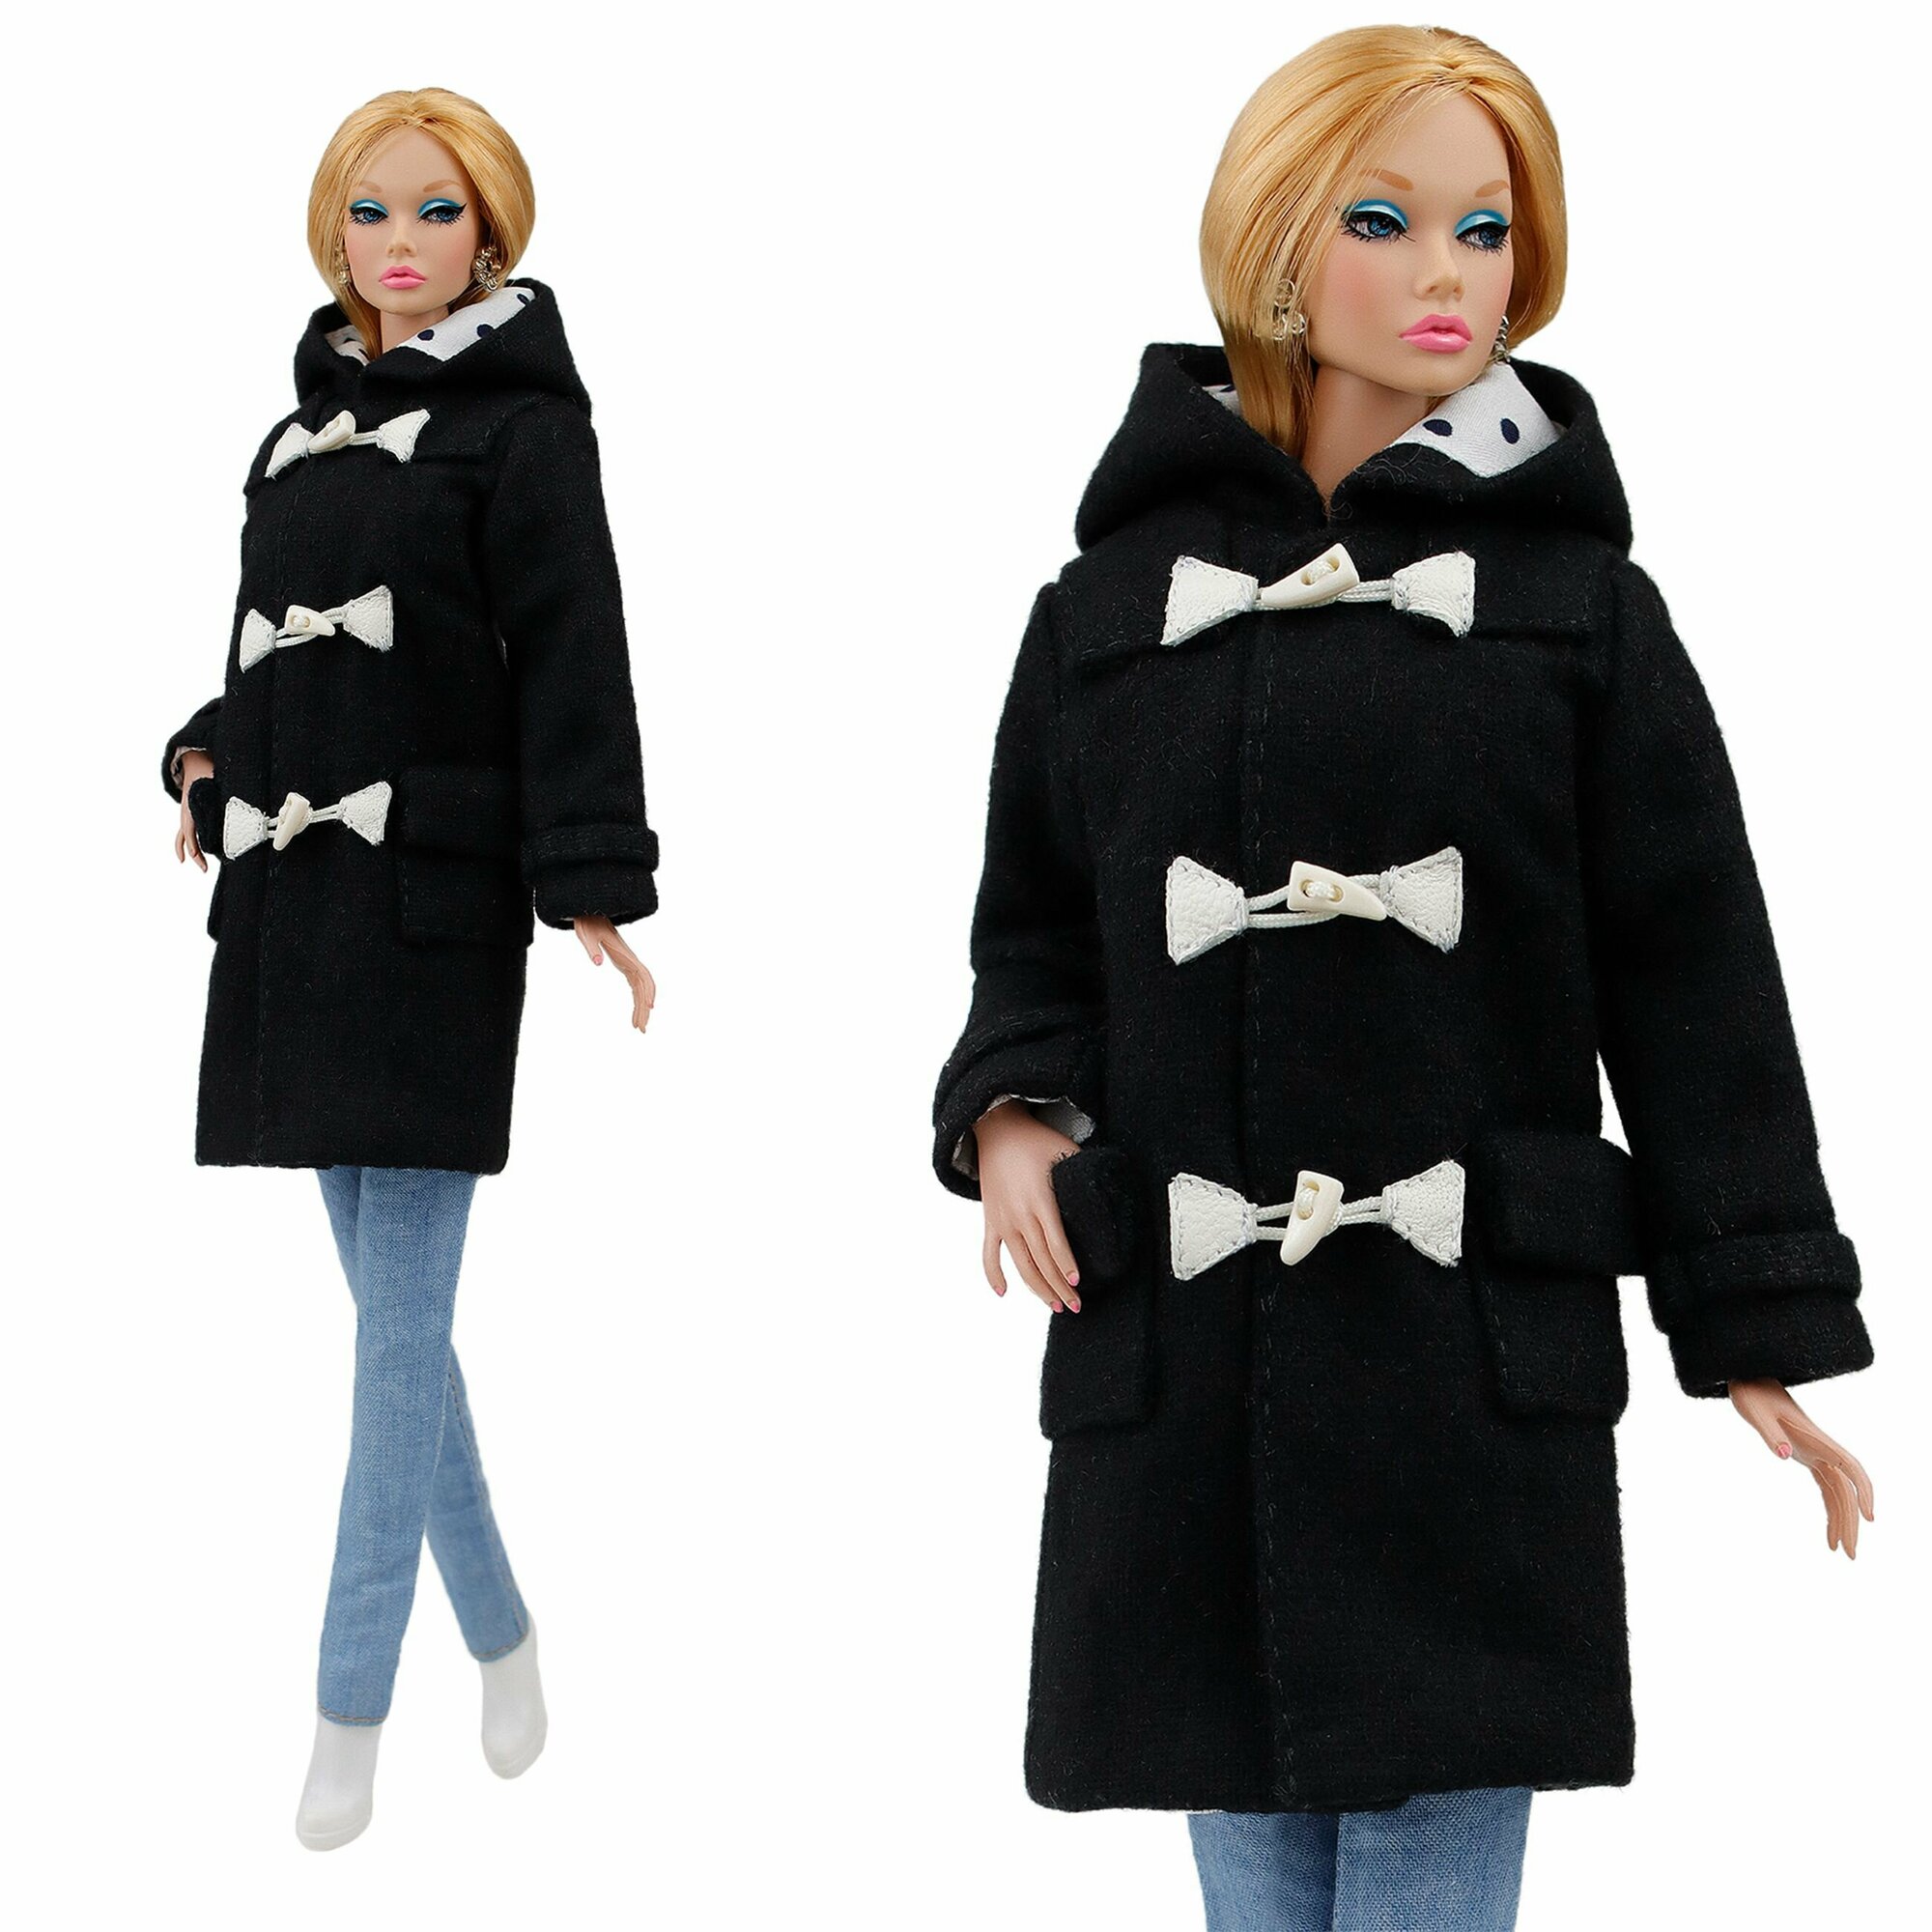 Эксклюзивное пальто-дафлкот чёрного цвета для кукол 29 см. типа барби ограниченного тиража